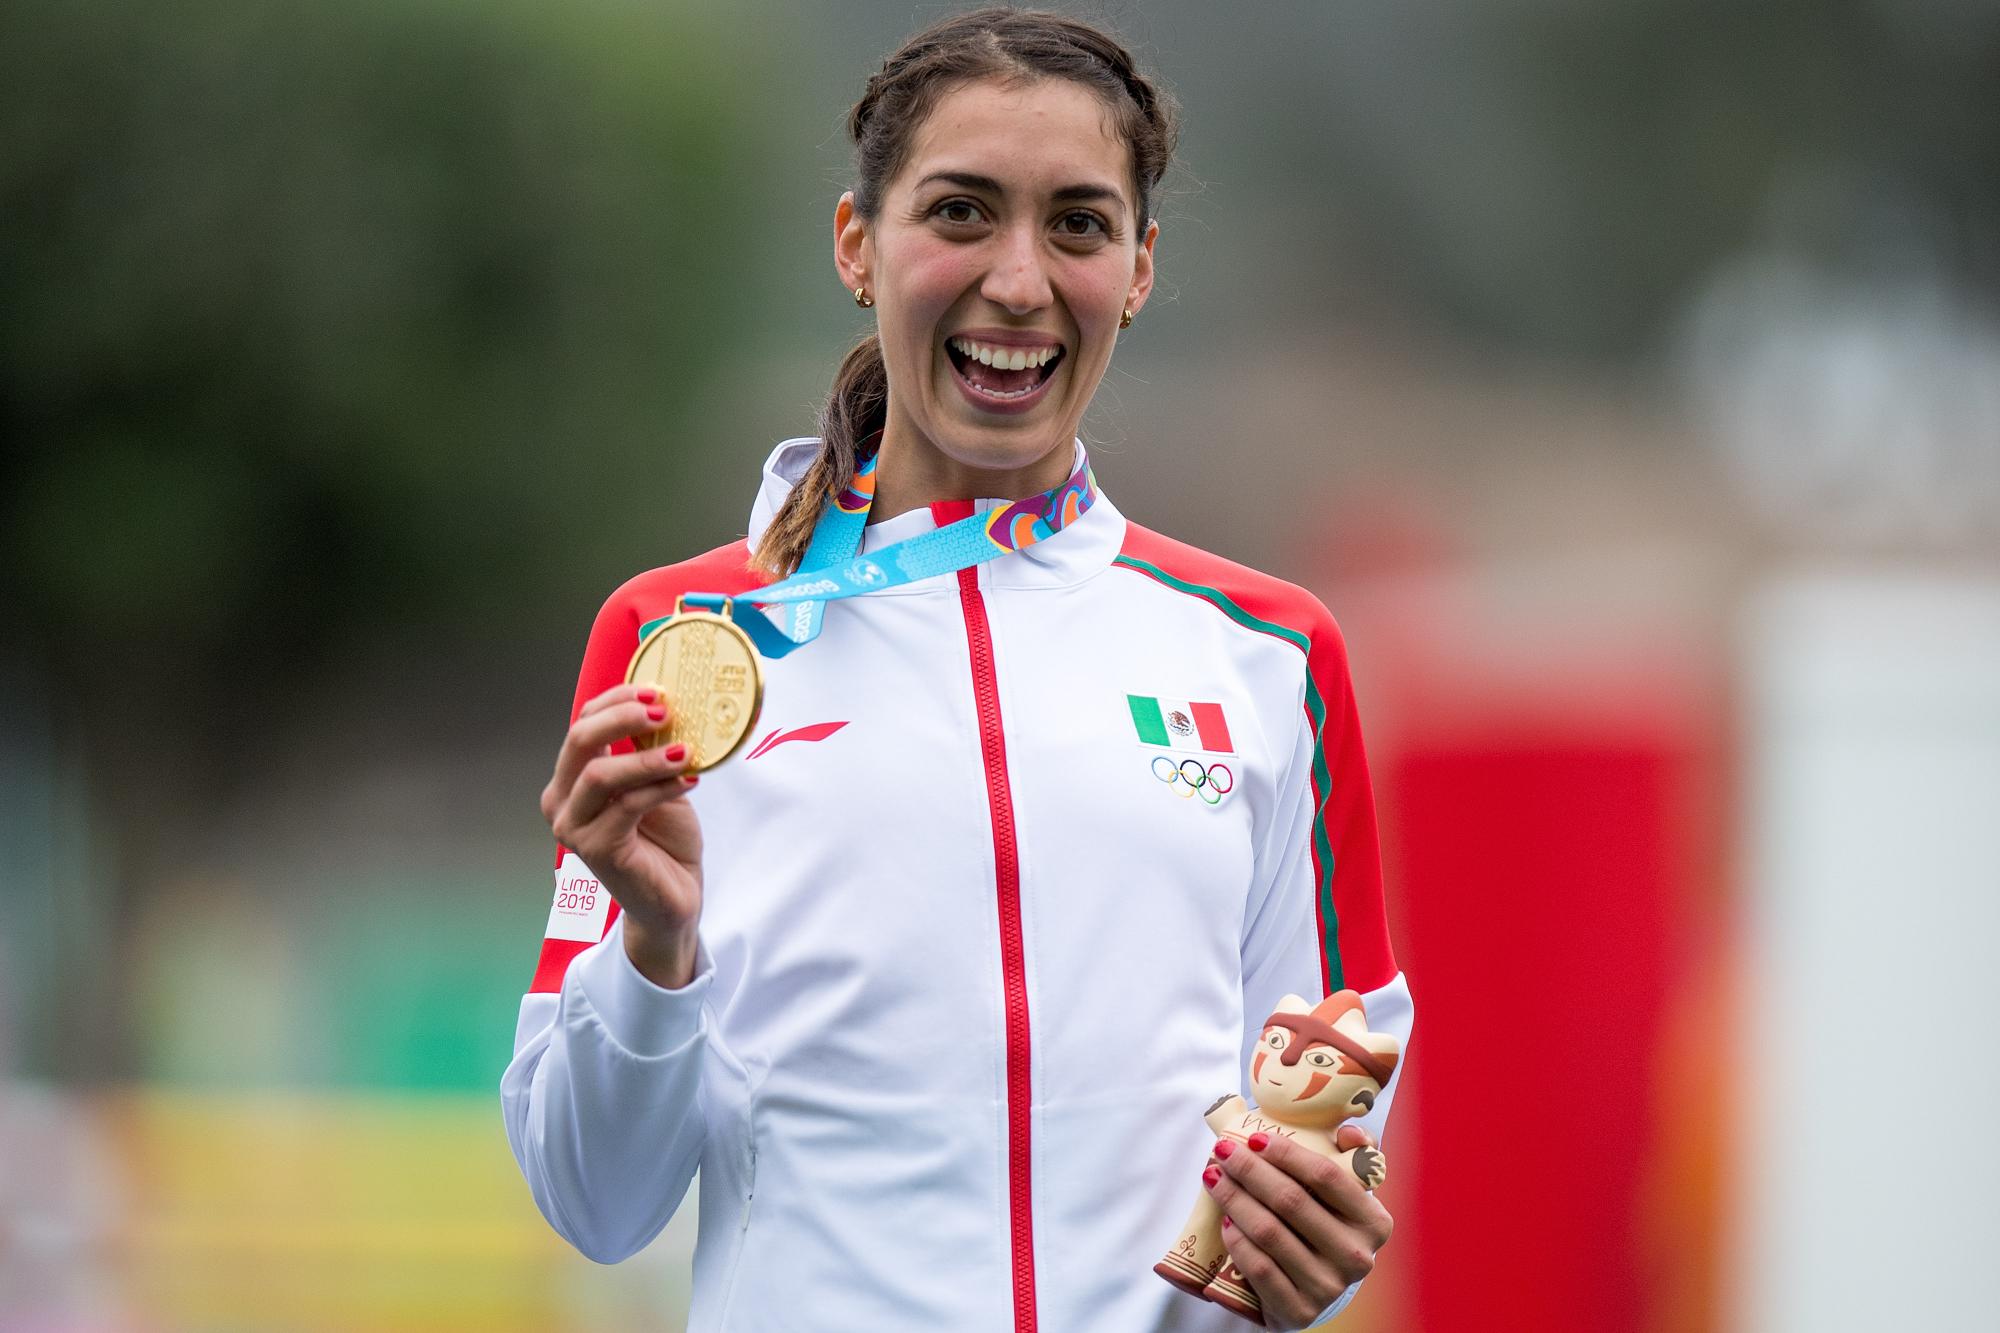 $!En el presente año, Arceo ha conquistado 12 medallas, lo que la pone entre las atletas más destacadas del mundo.